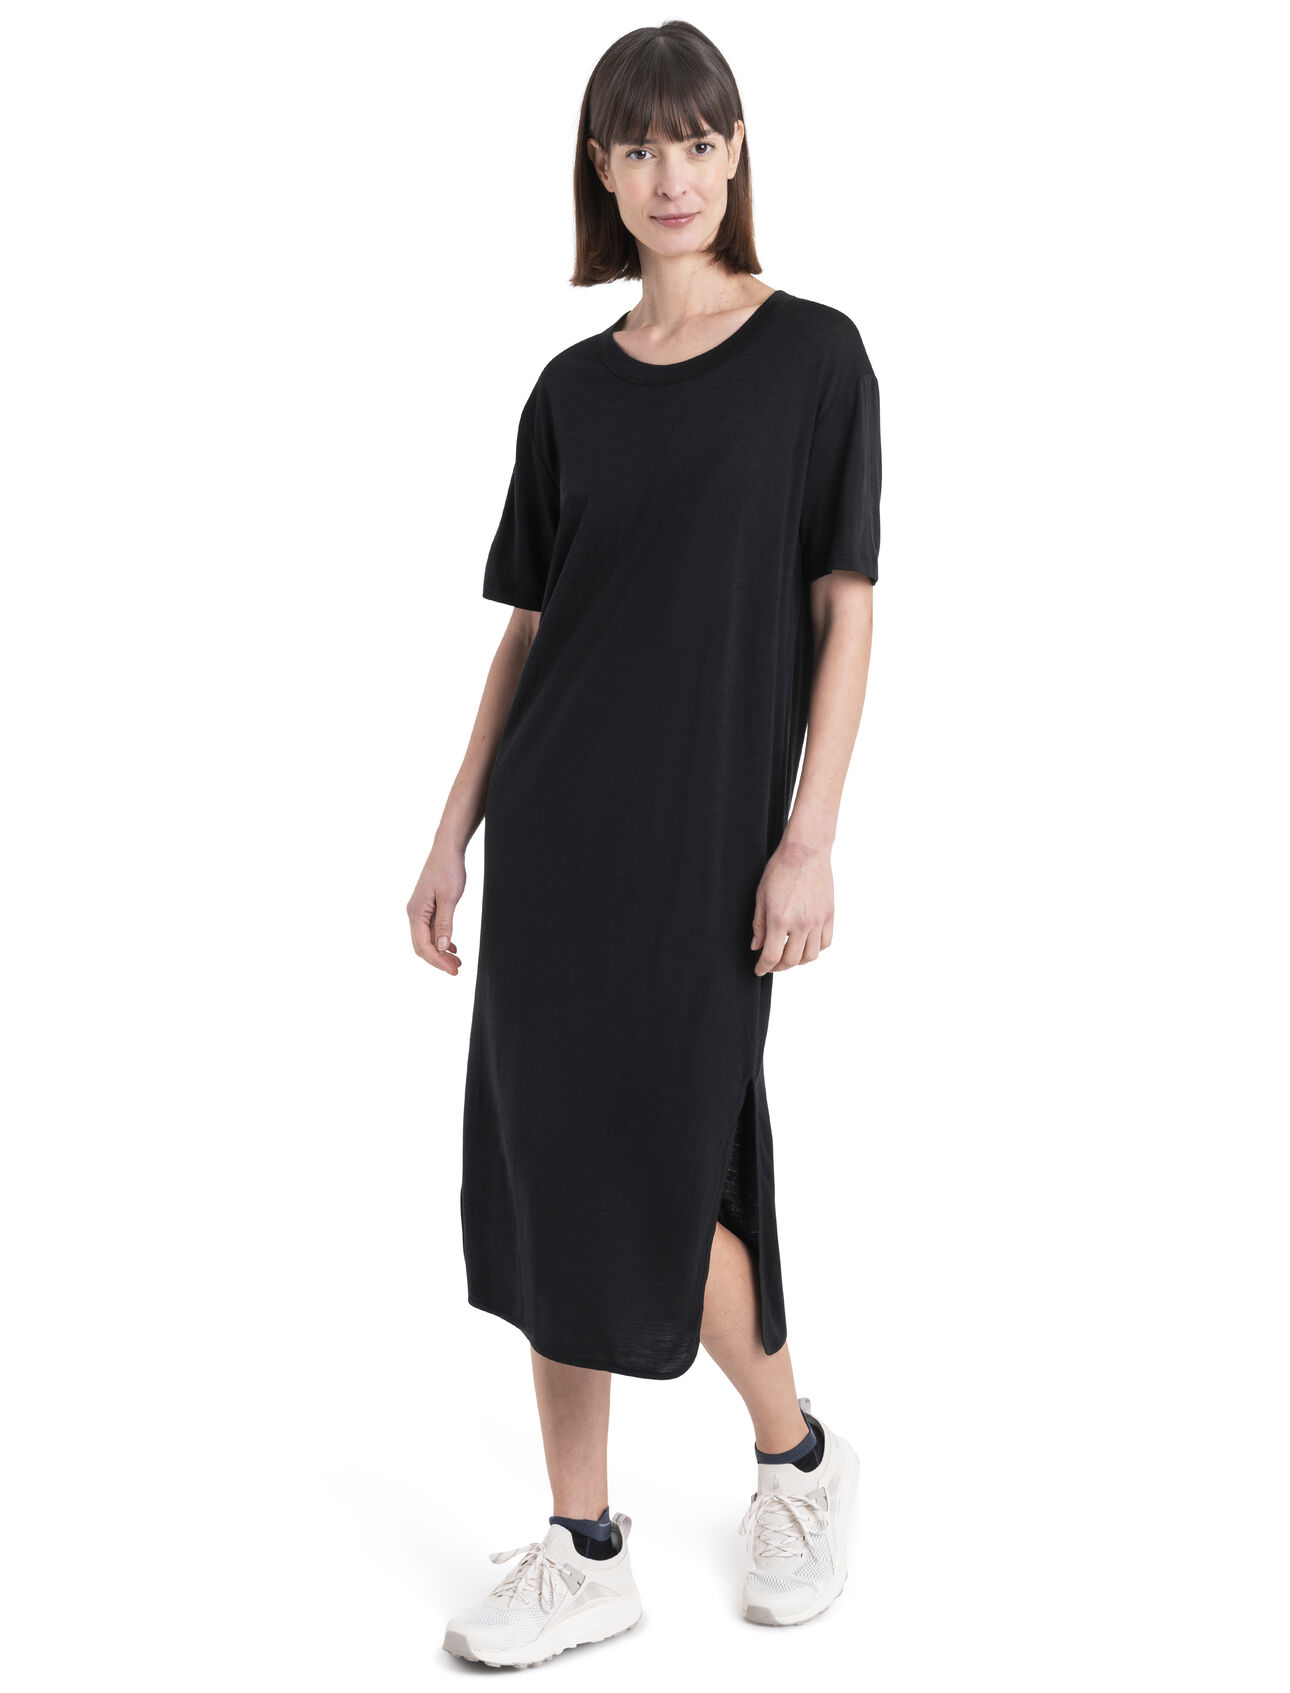 Merino Granary Kleid Damen Ein stylishes, superbequemes Midi-Shirtkleid, perfekt für Wohlfühlmomente zu Hause oder für spontane Ausflüge im Alltag, das Granary T-Shirt-Kleid ist dank 100% Merinowolle weich und atmungsaktiv. 